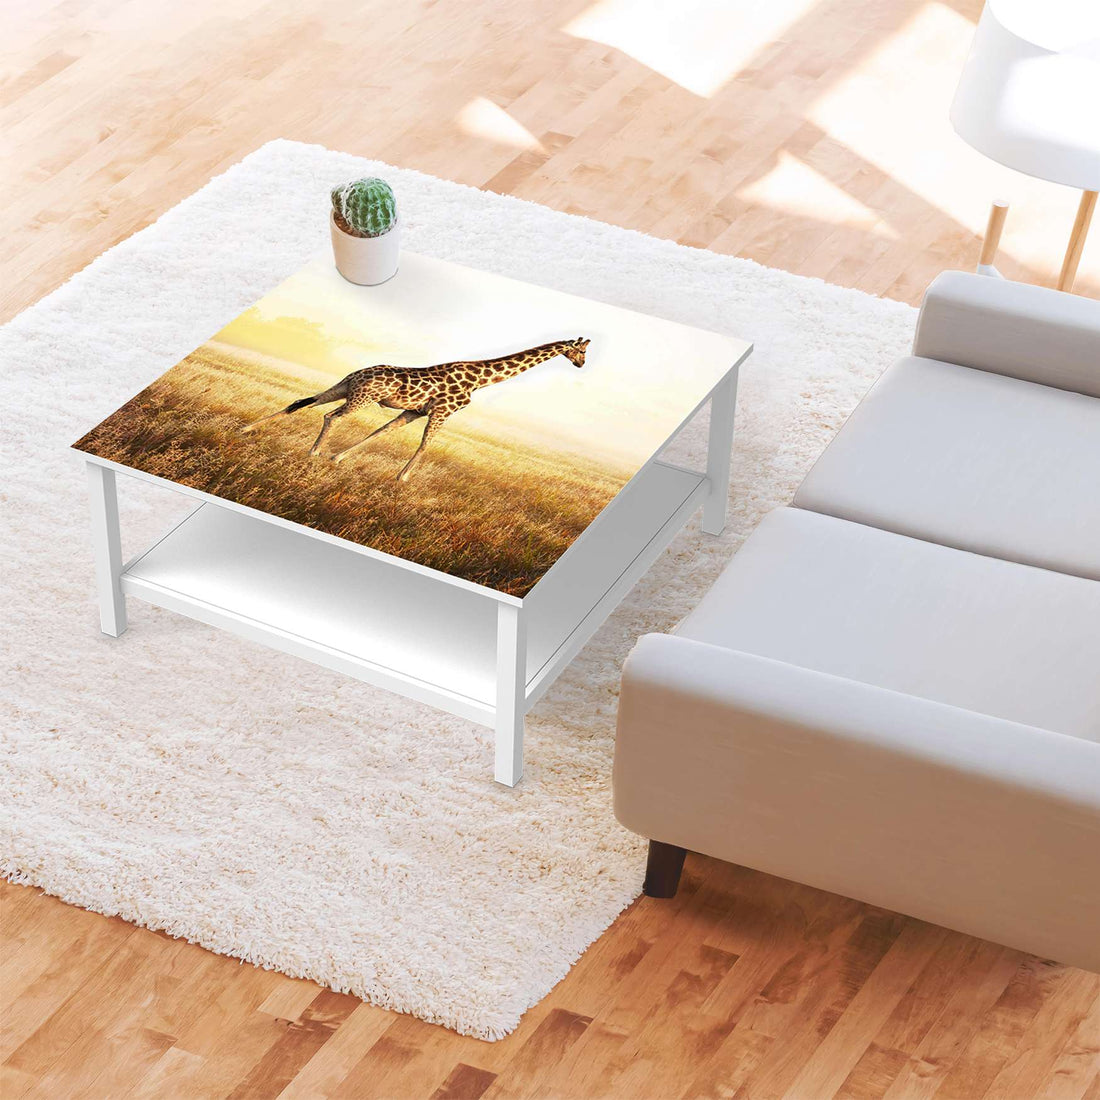 Klebefolie für Möbel Savanna Giraffe - IKEA Hemnes Couchtisch 90x90 cm - Wohnzimmer